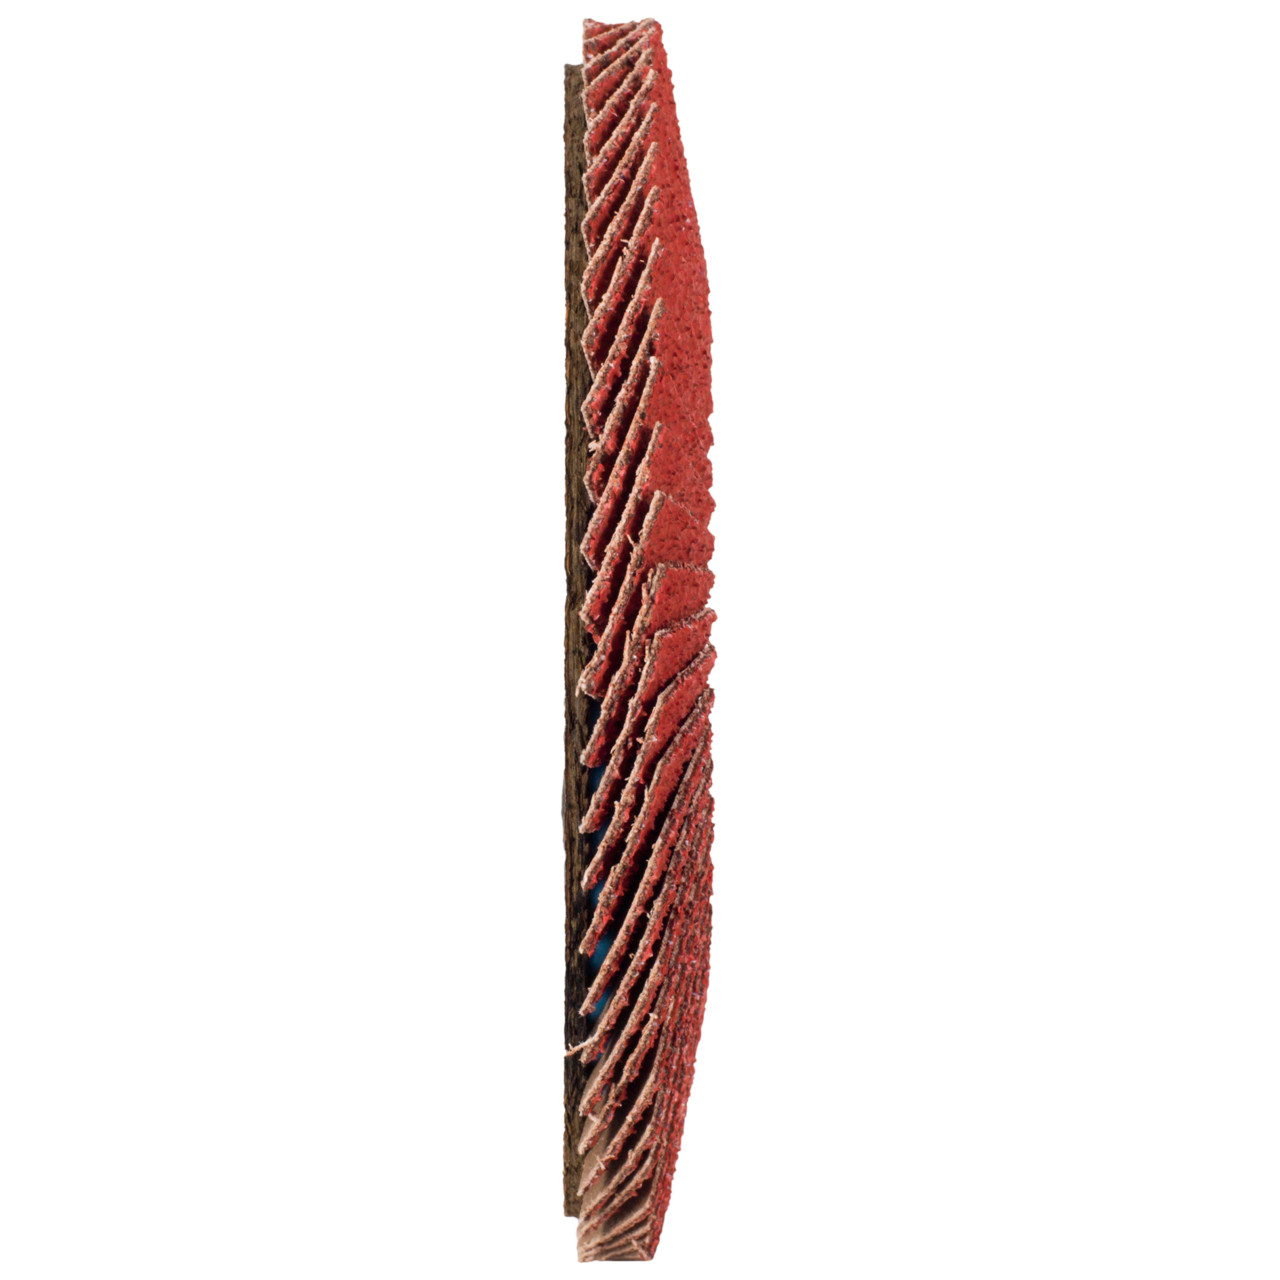 TYROLIT getande borgring DxH 150x22,23 CERABOND getande borgring voor roestvrij staal, P40, vorm: 27A - slingeruitvoering (glasvezeldragerhuisuitvoering), Art. 34166162